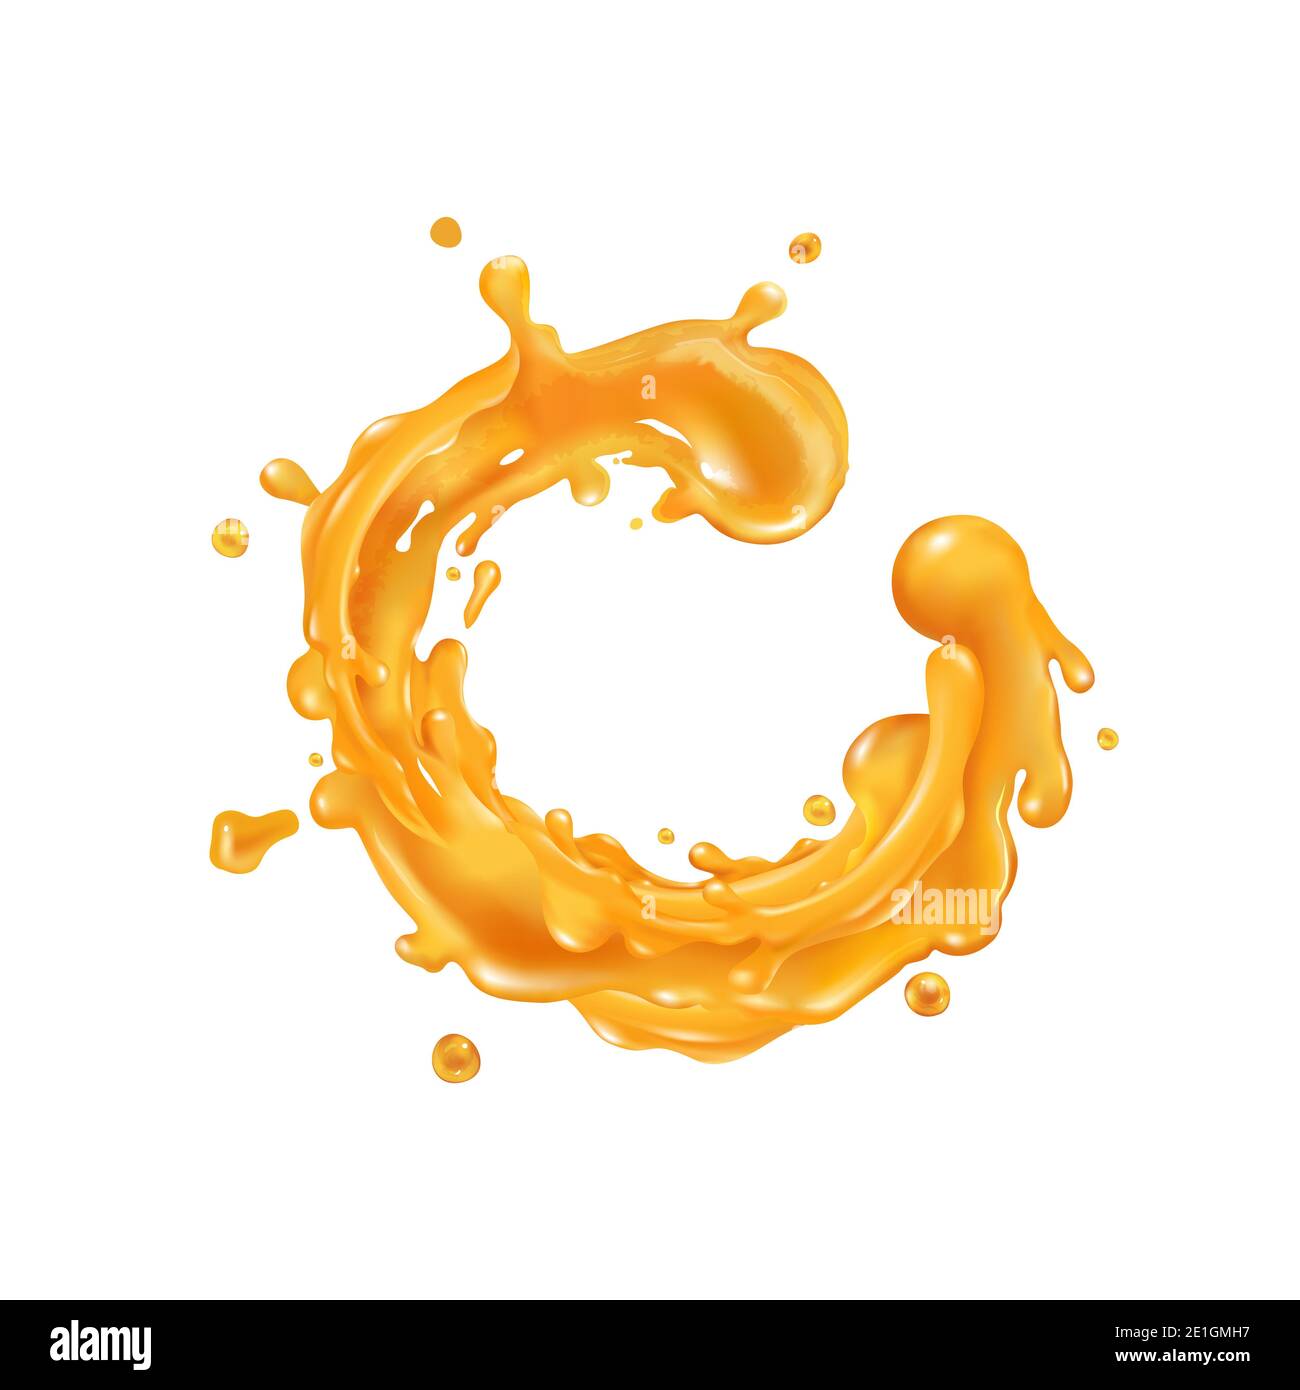 Orange juice splash circle on a white background Stock Photo